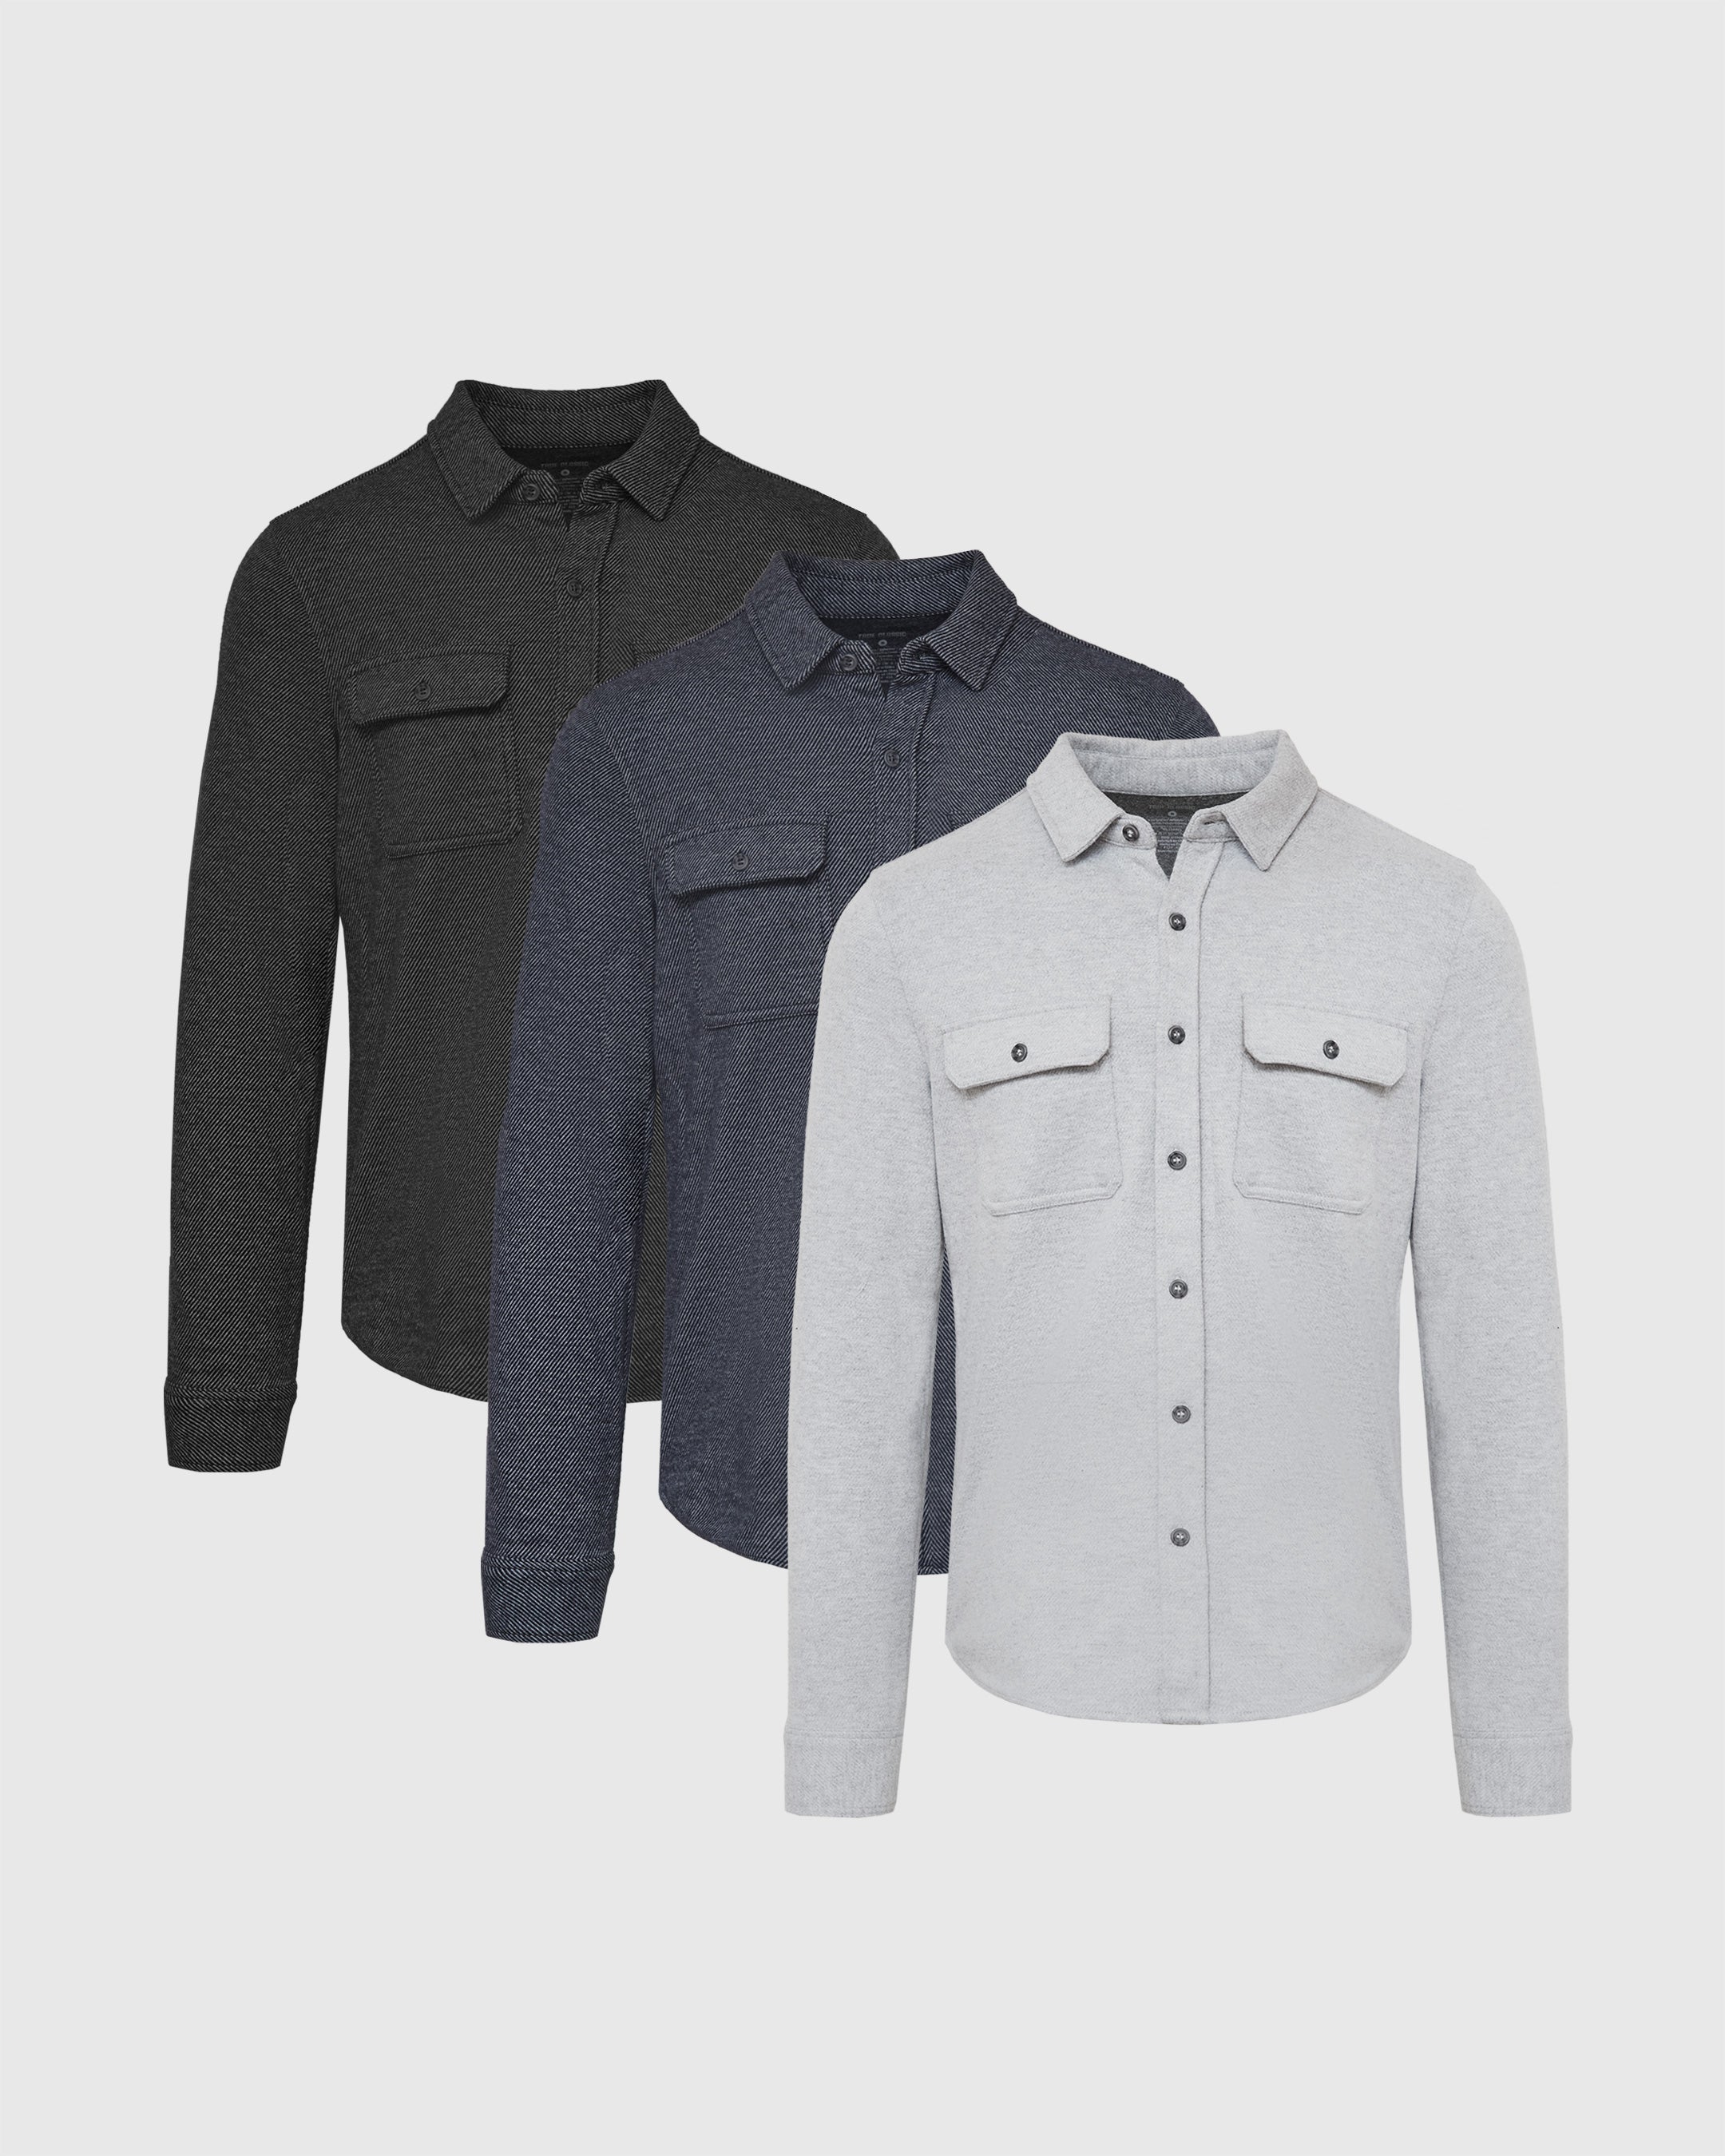 Standard Sweater Button Up Shirt 3-Pack